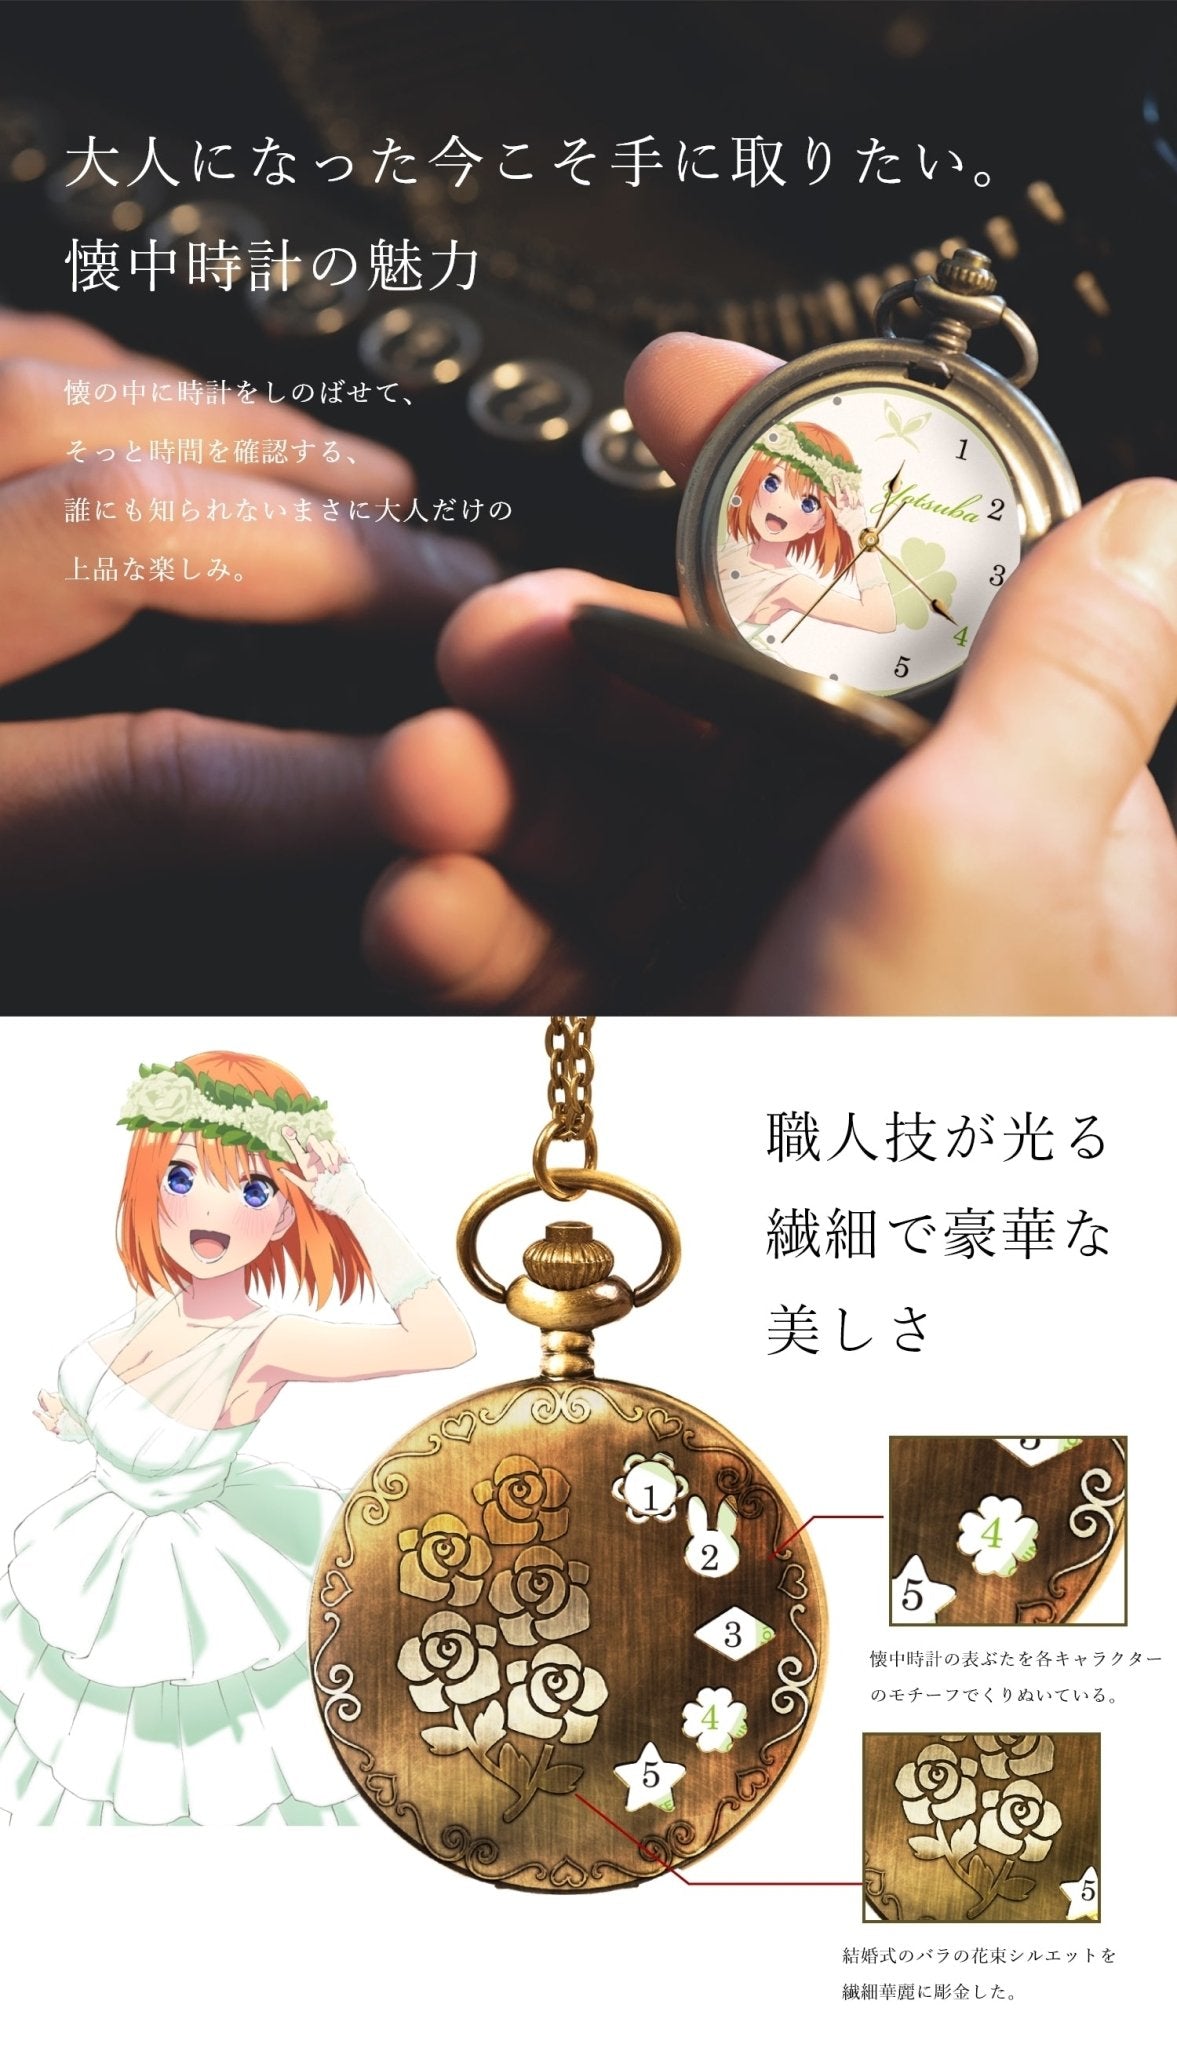 映画「五等分の花嫁」公式懐中時計　中野 四葉 - 公式通販サイト「アニメコレクション/Anime Collection」